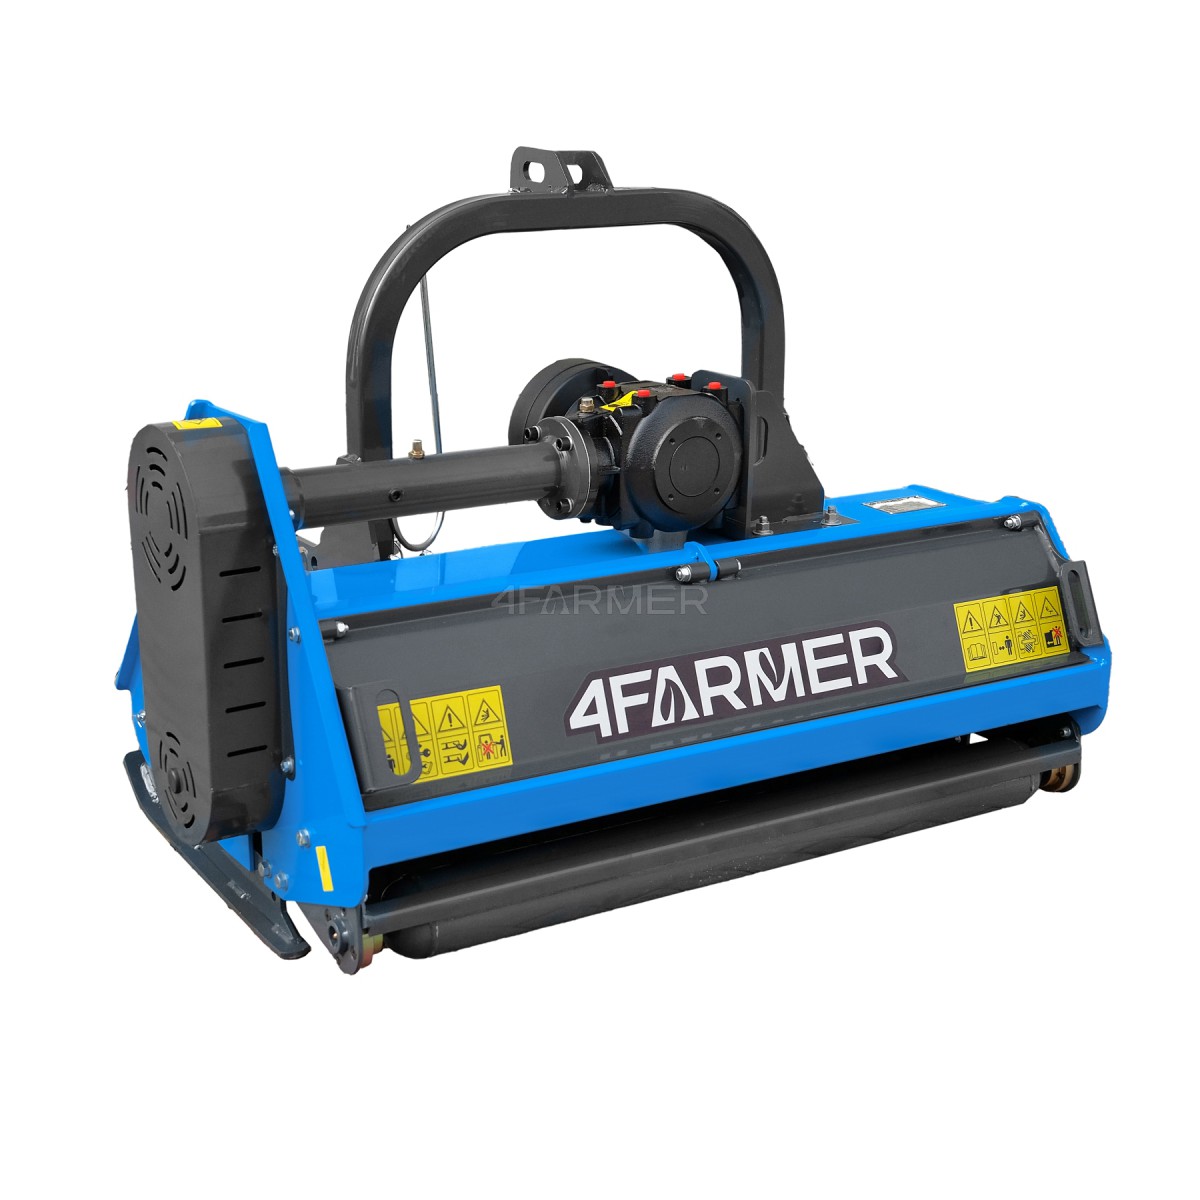 EFGC 115D 4FARMER flail mower - blue